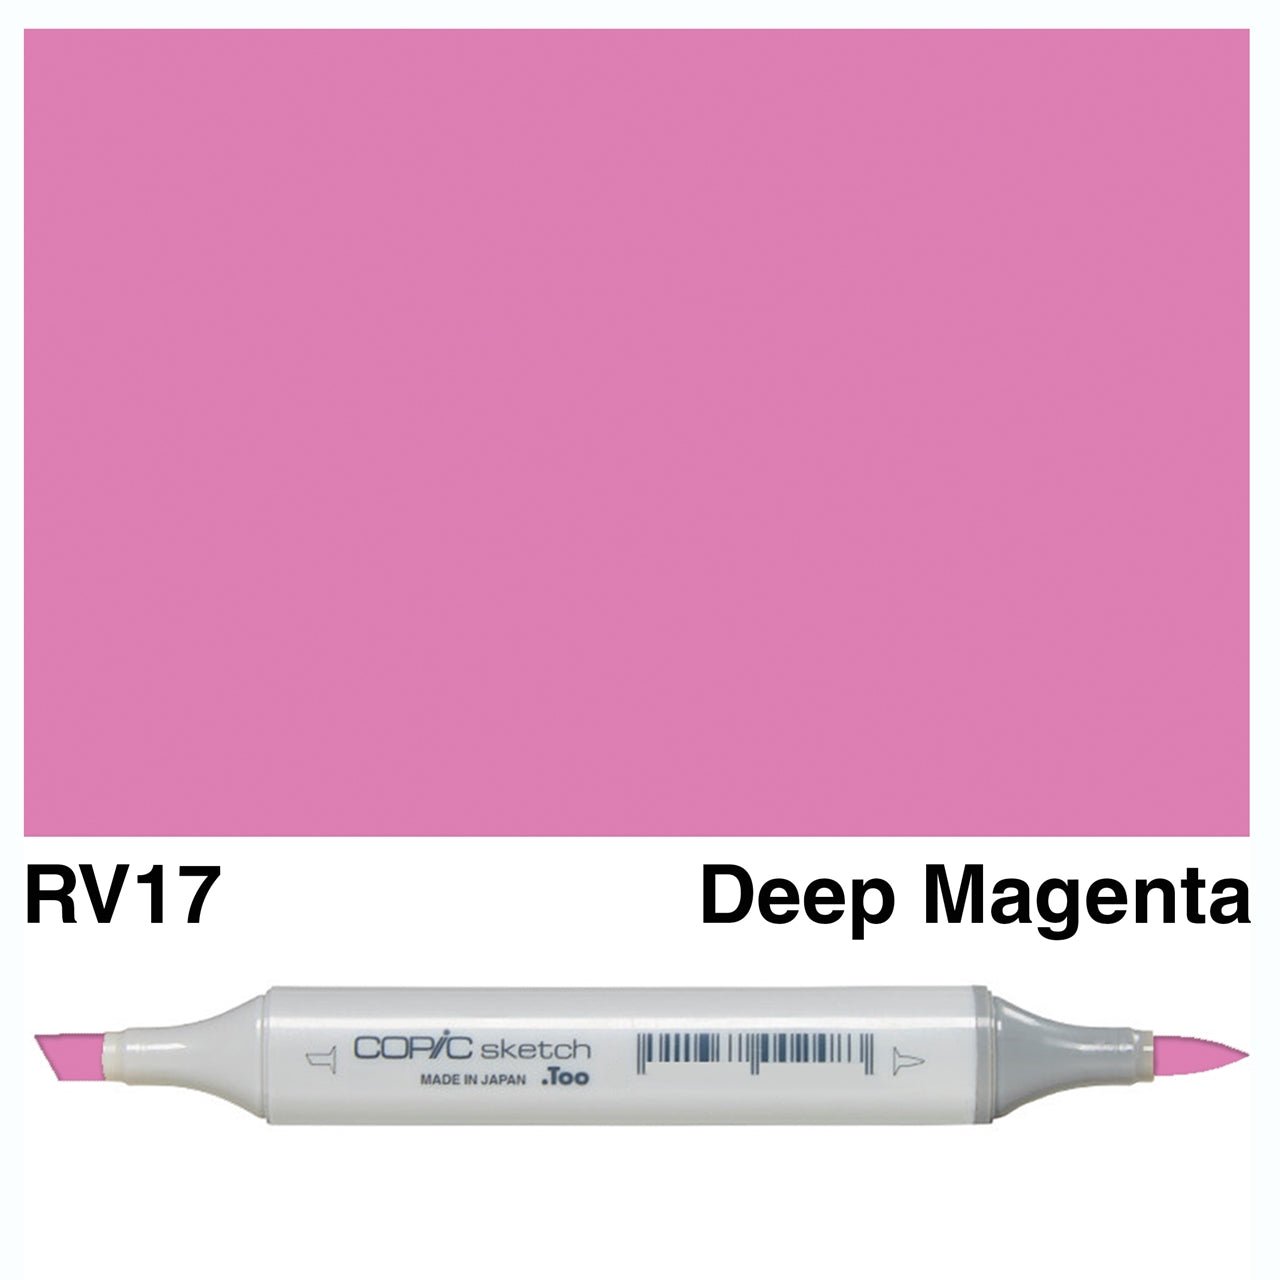 Copic Sketch RV17 Deep Magenta - theartshop.com.au